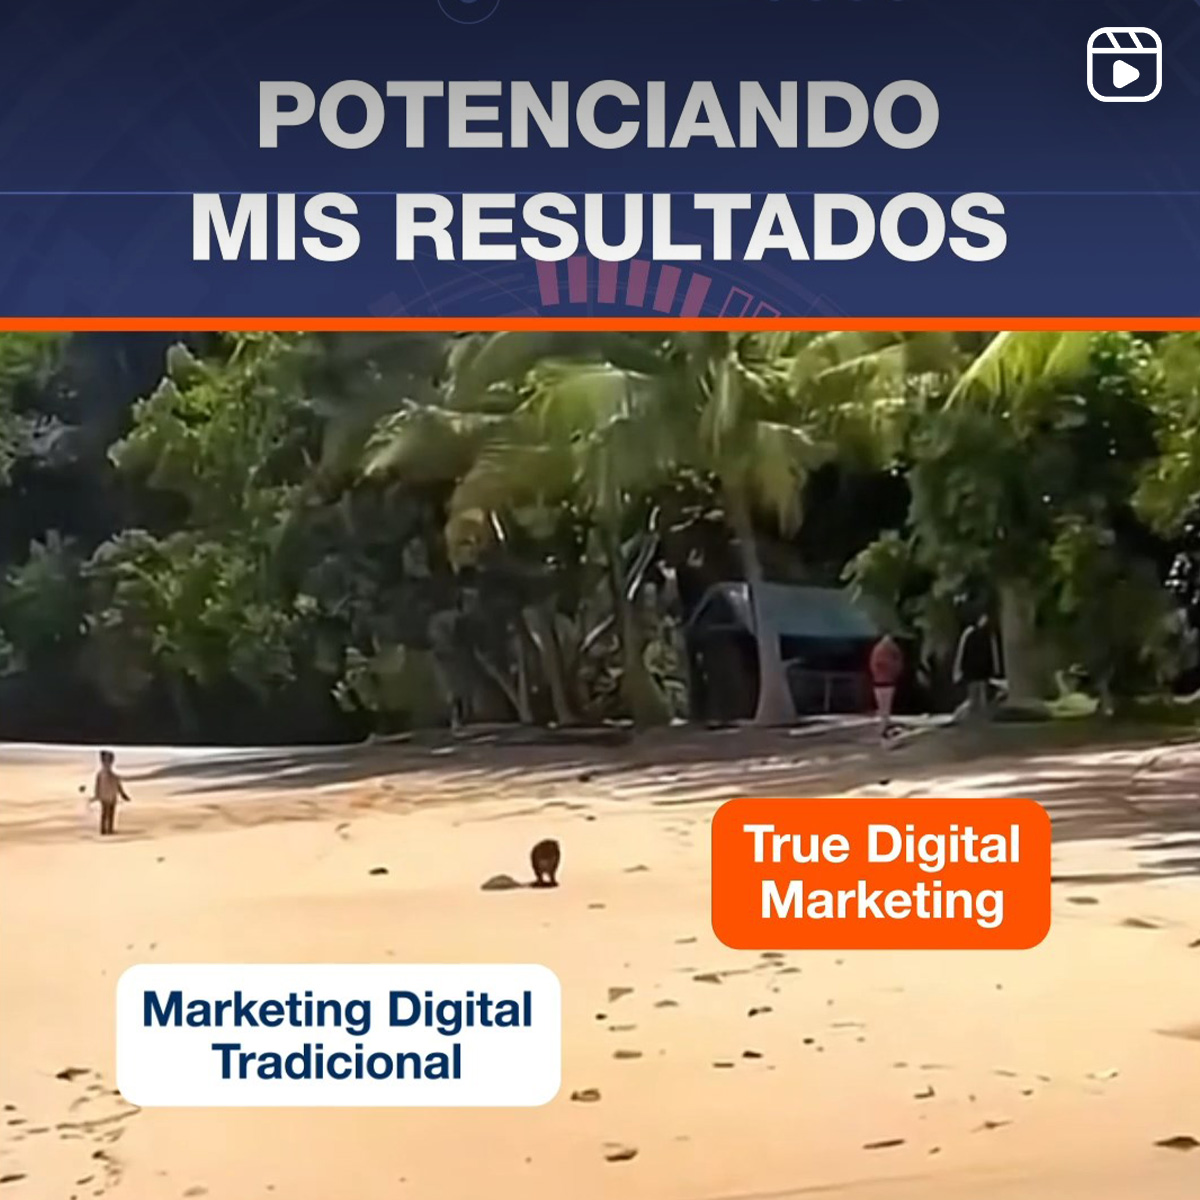 Potenciando mis Resultados Marketing Digital Tradicional y True Digital Marketing